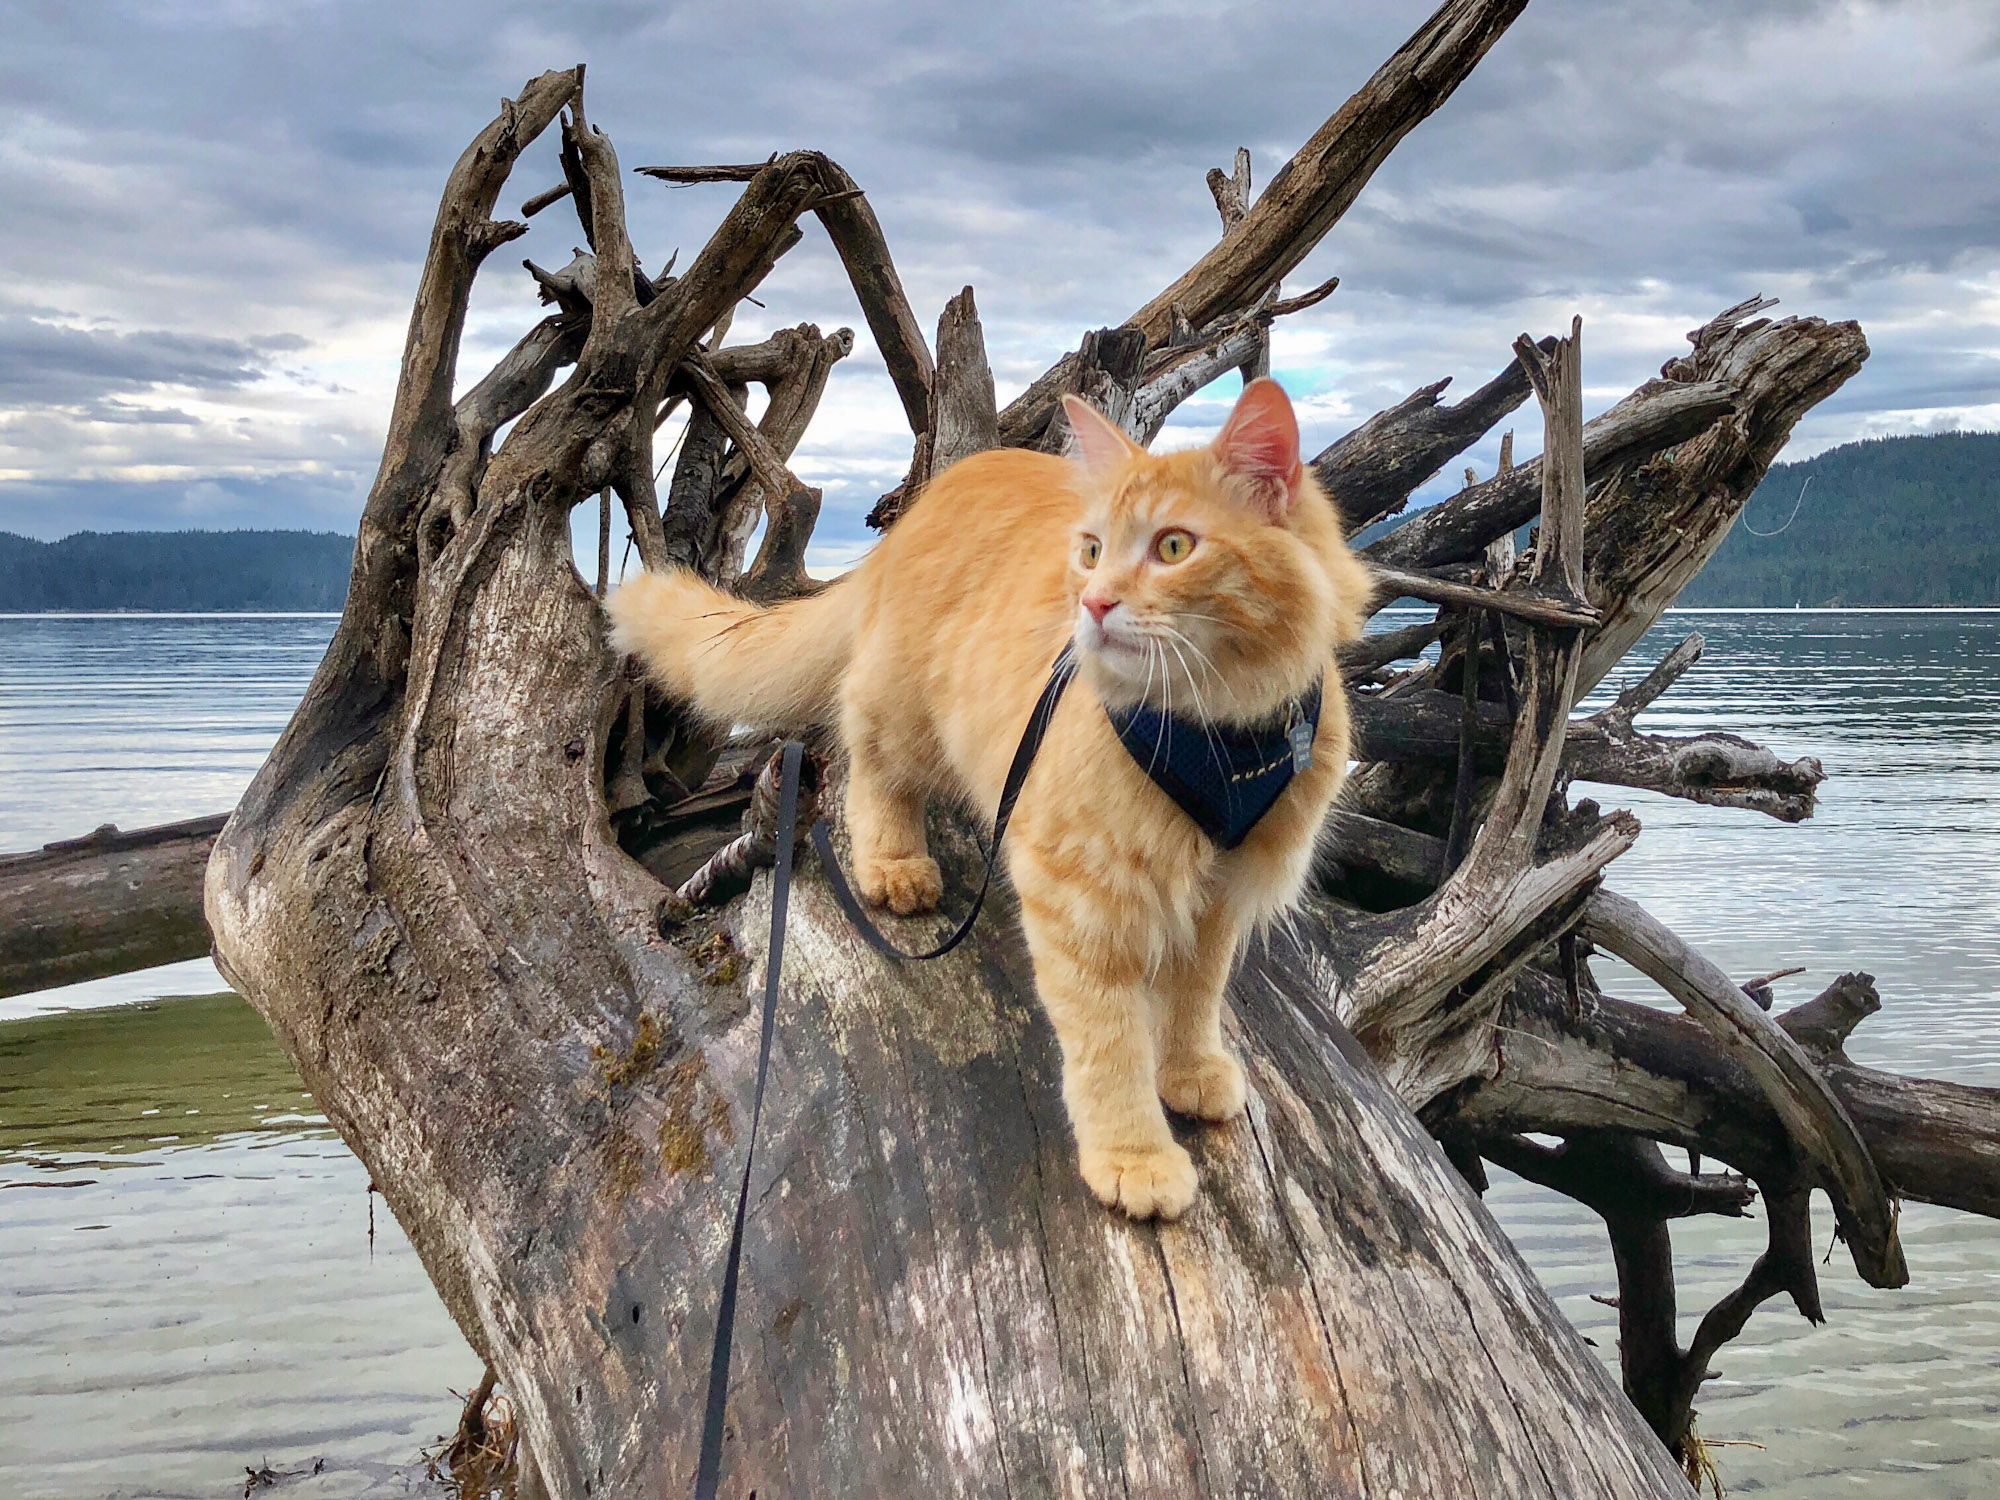 adventure cat walks on fallen tree in water